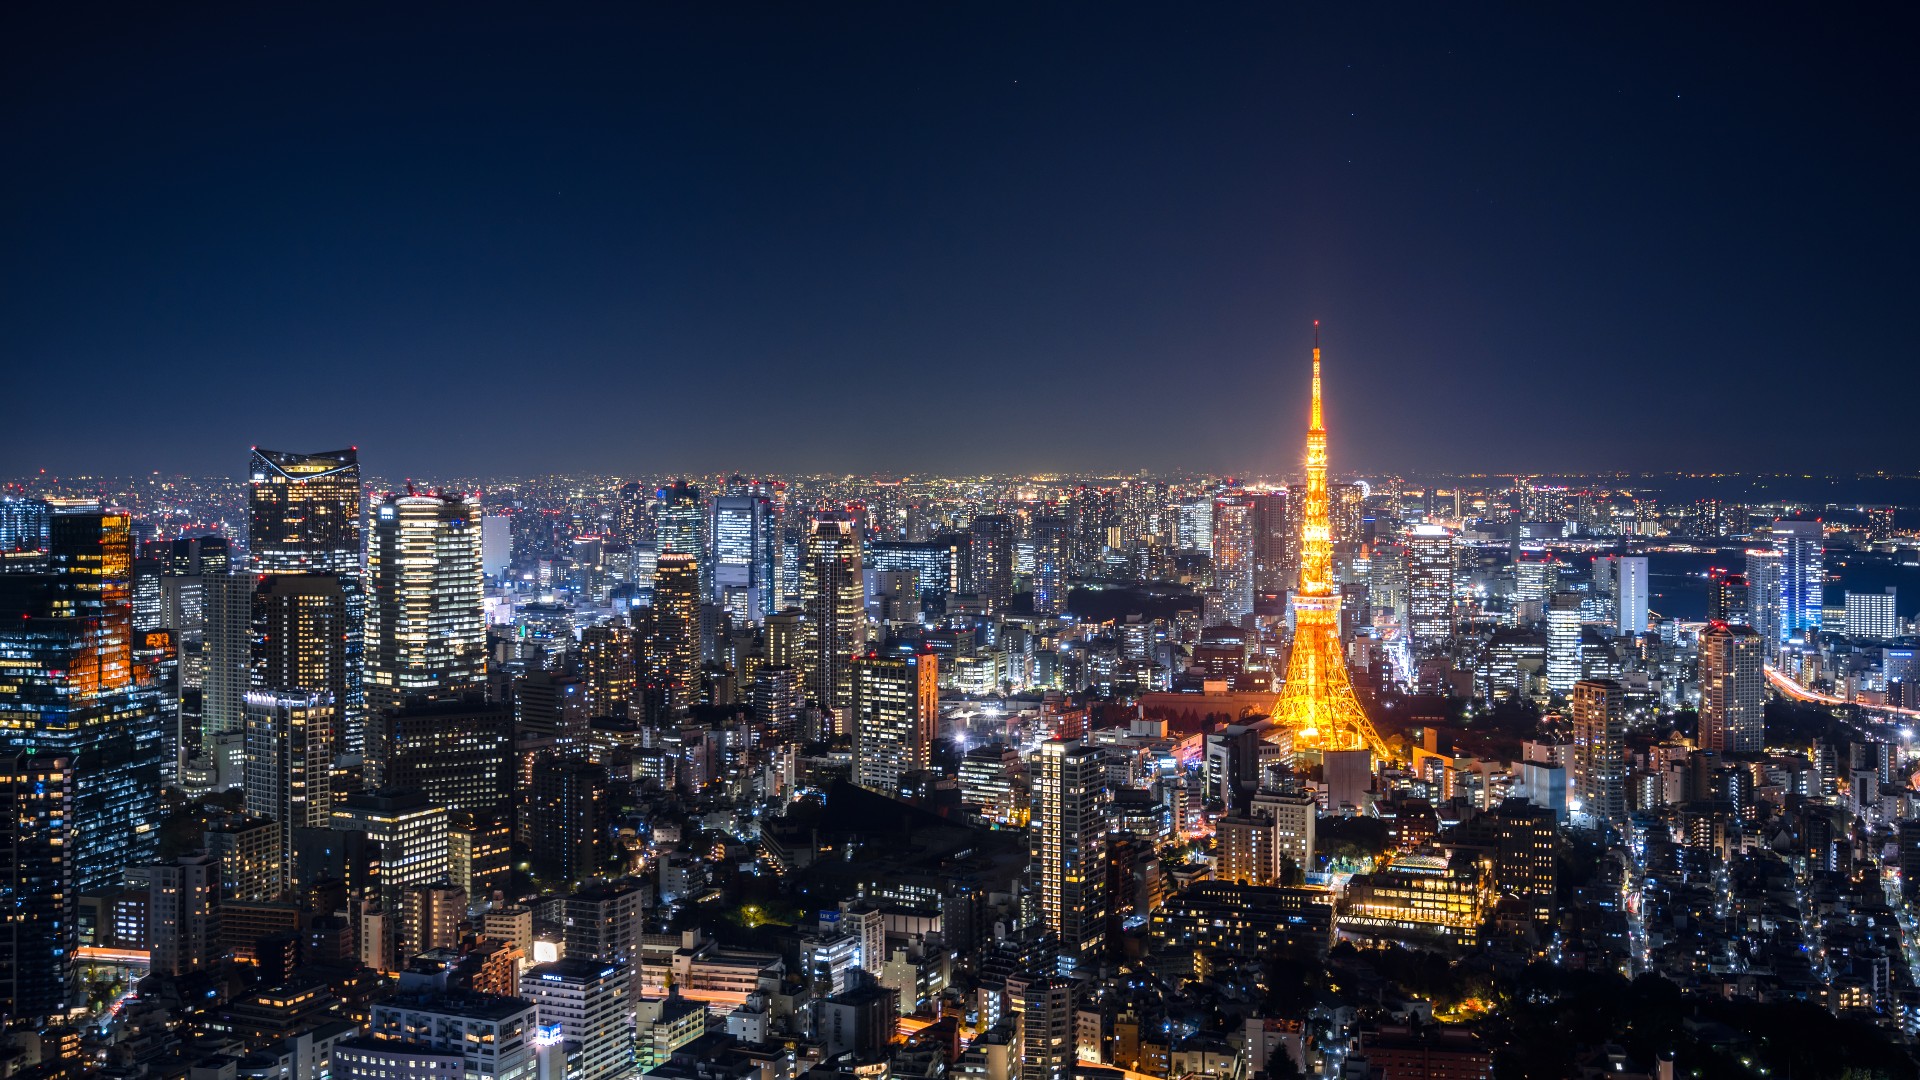 Vista aérea del horizonte de Tokio por la noche, Japón.  Vista elevada de una Torre de Tokio brillantemente iluminada y rascacielos llenos de gente en Tokio por la noche.